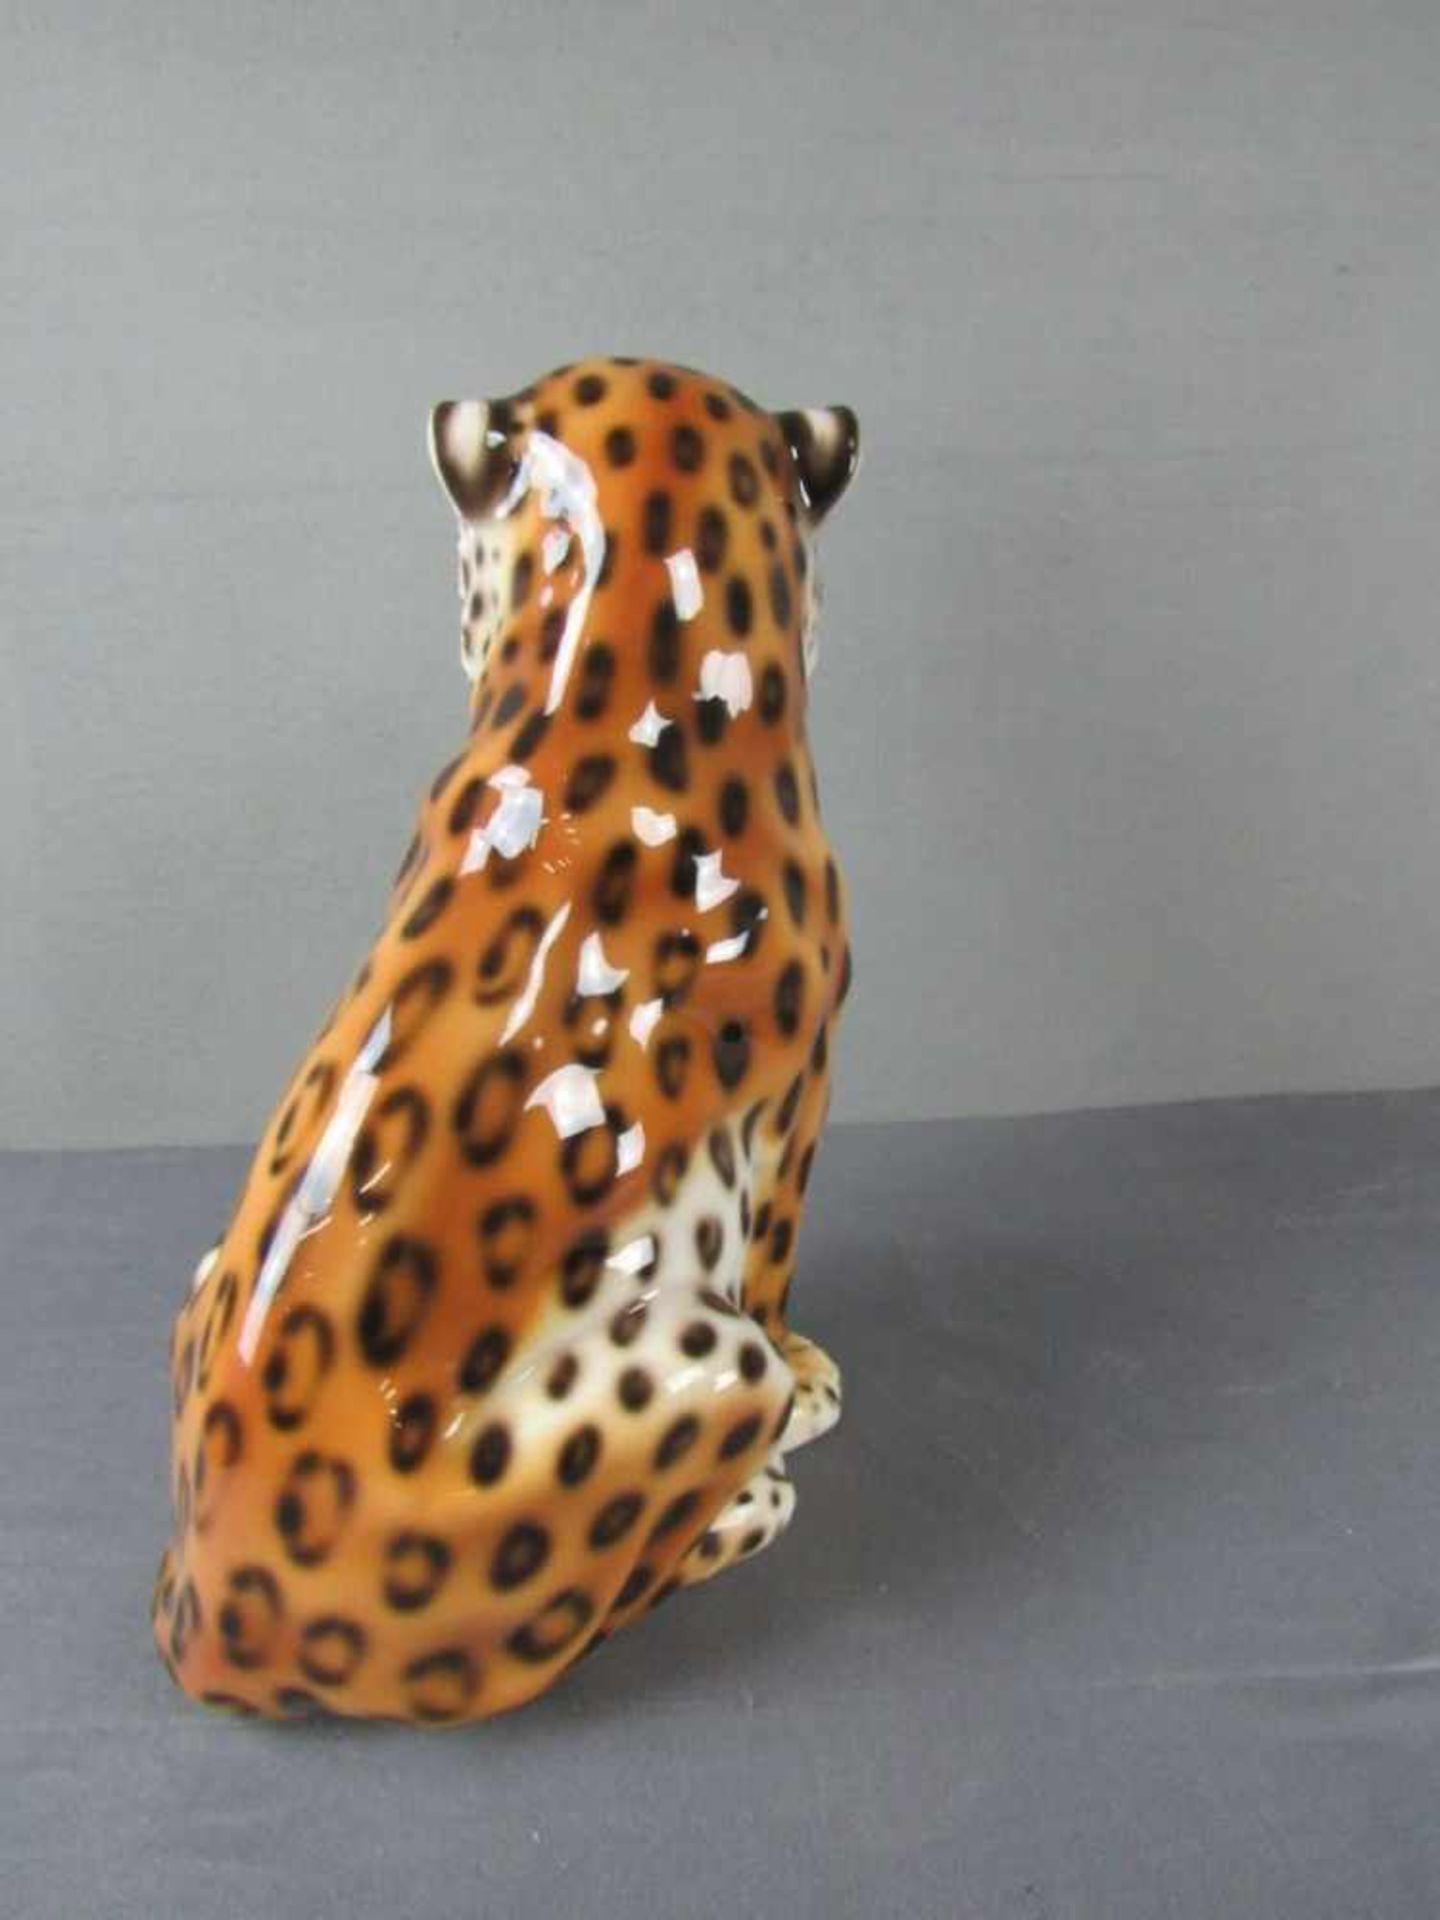 Große Porzellanfigur Gepard 48cm hoch - Image 3 of 3